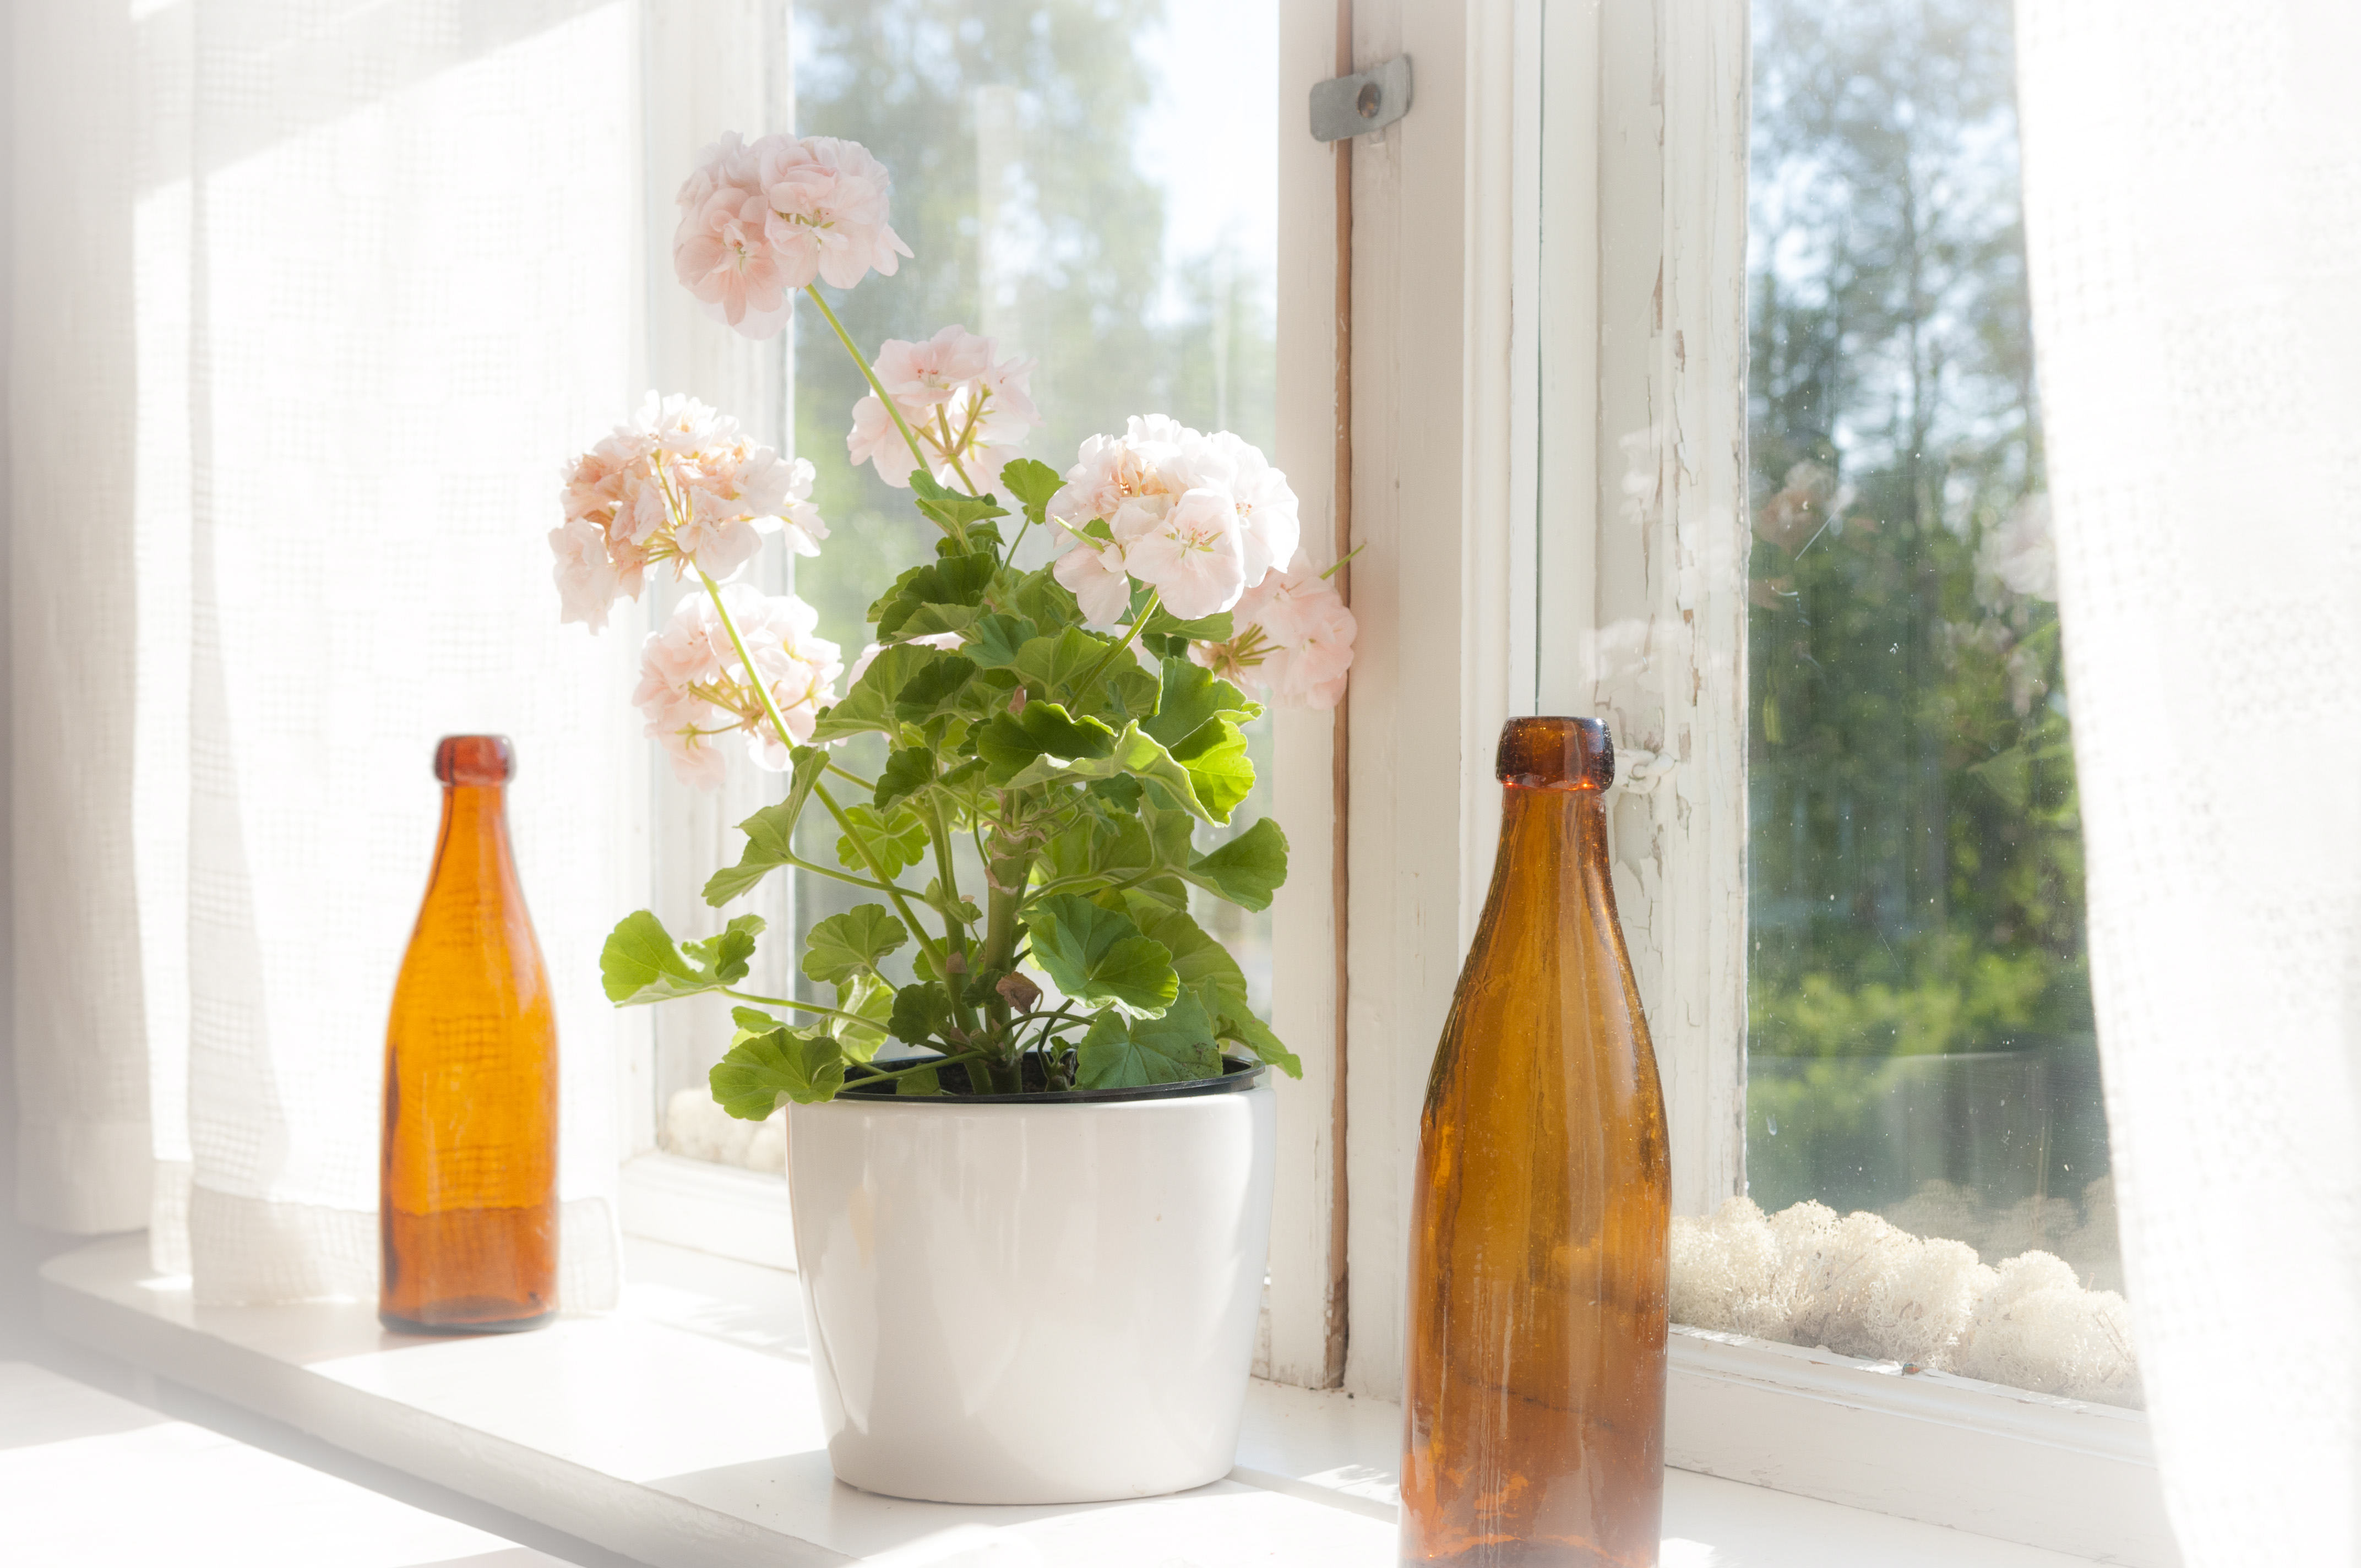 En ljusrosa pelargon och två bruna flaskor står i ett fönster.